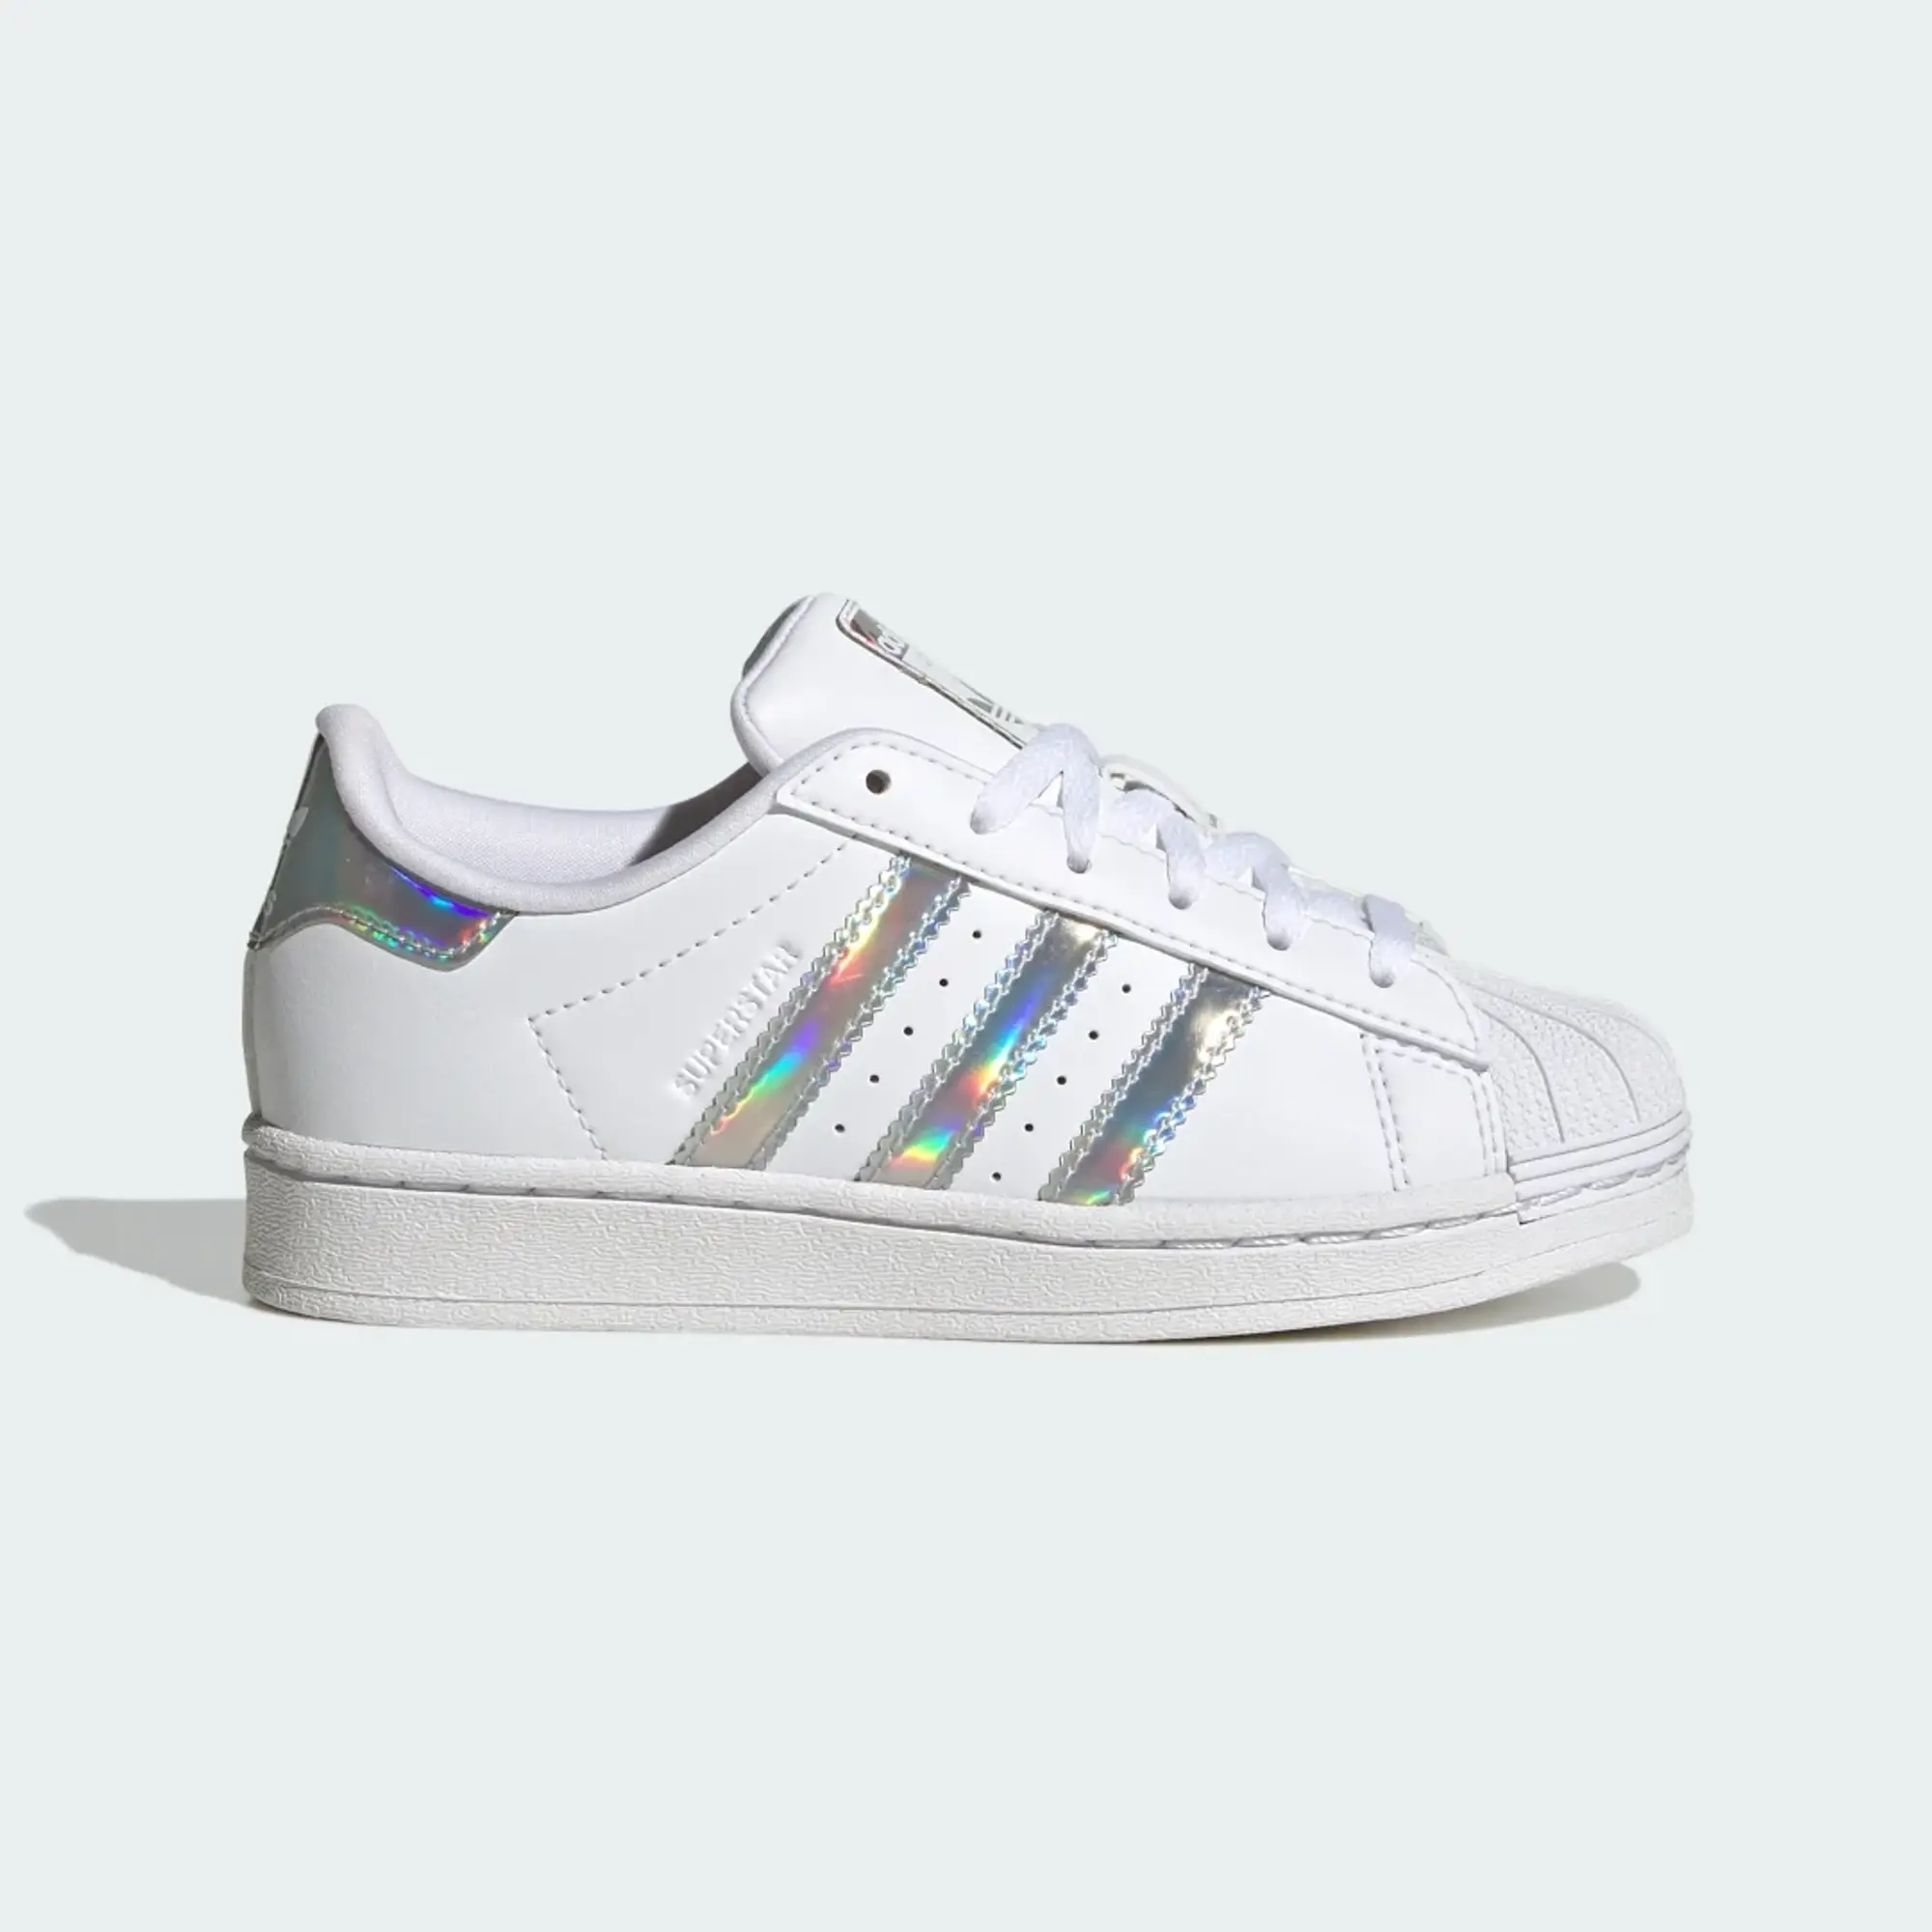 Adidas Superstar - White